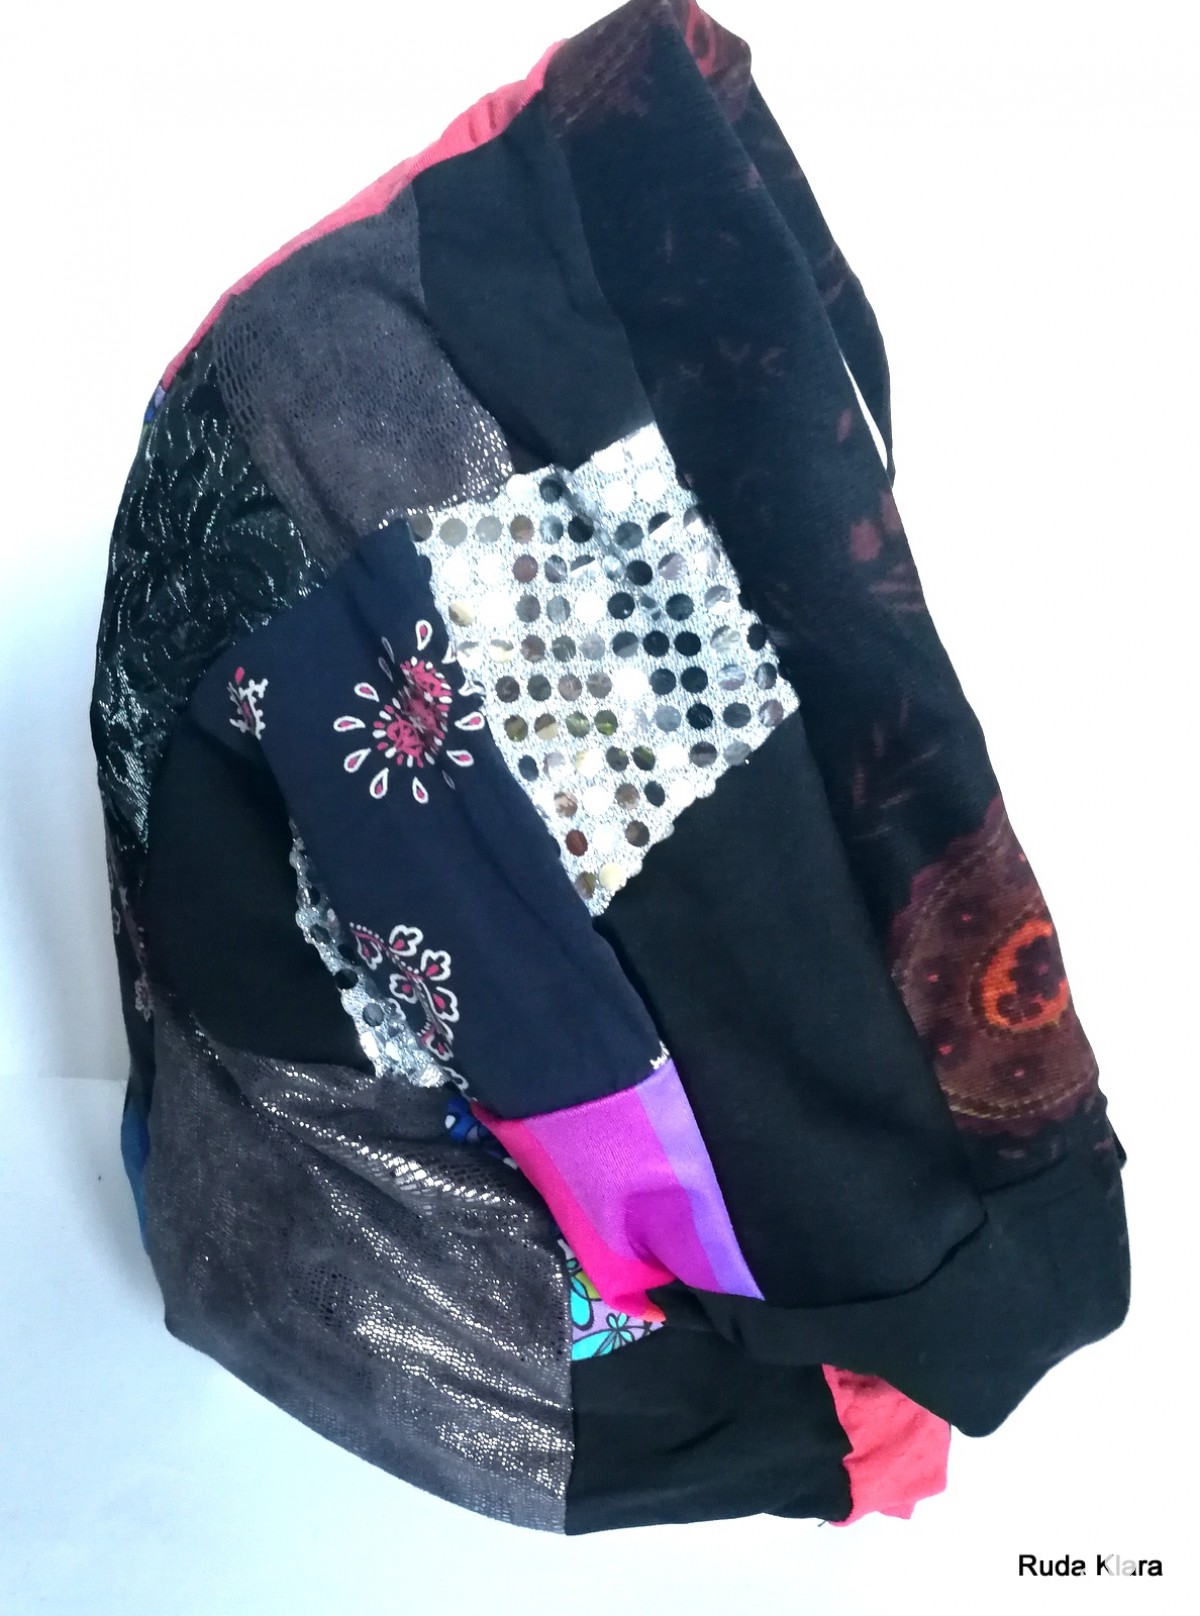 komin patchworkowy pojedynczy egzemplarz damski handmade